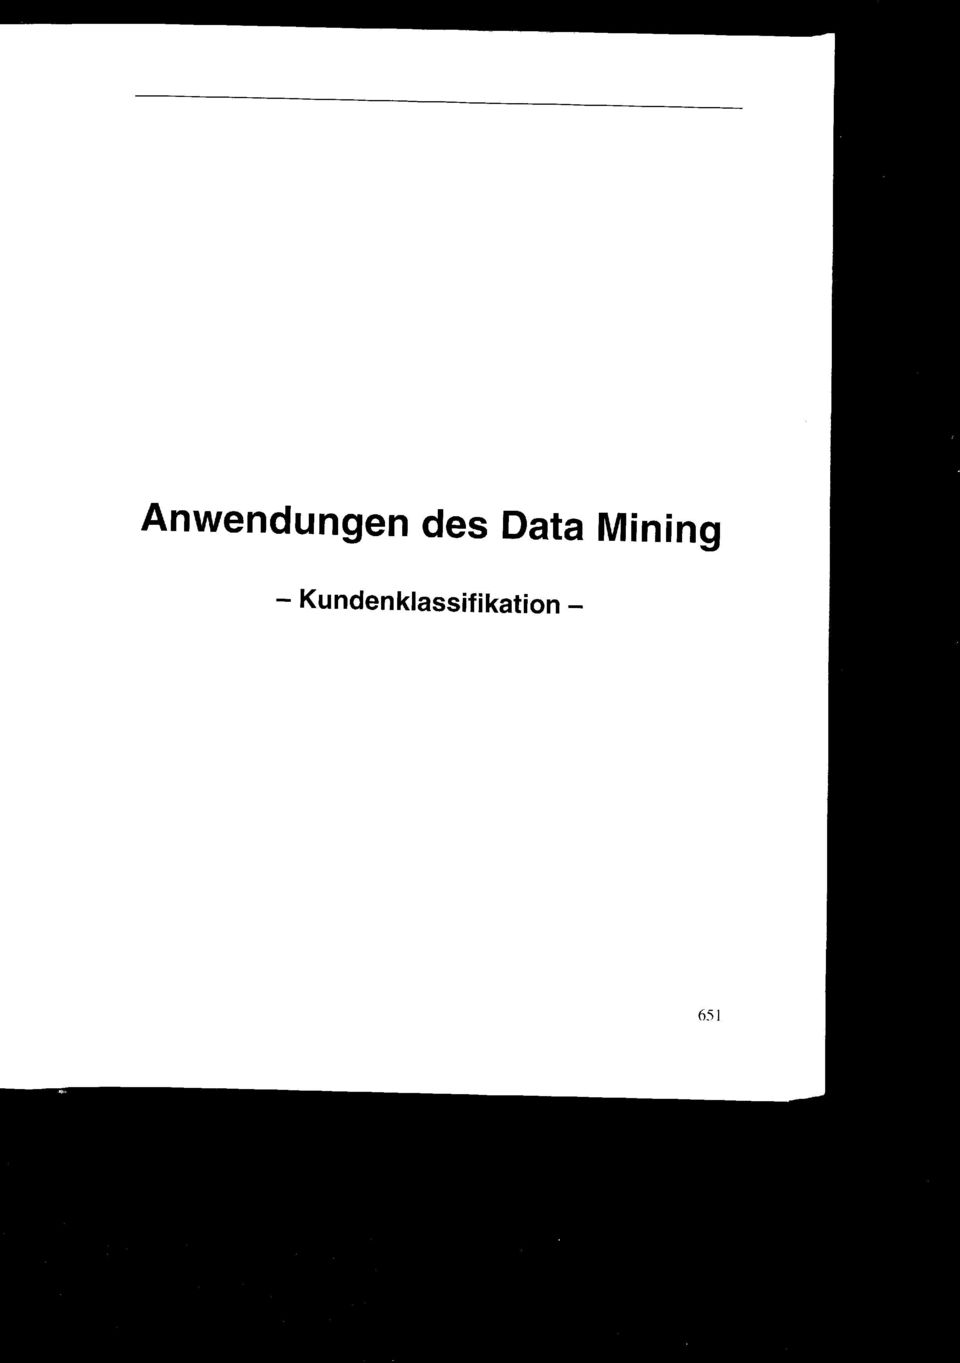 Mining -